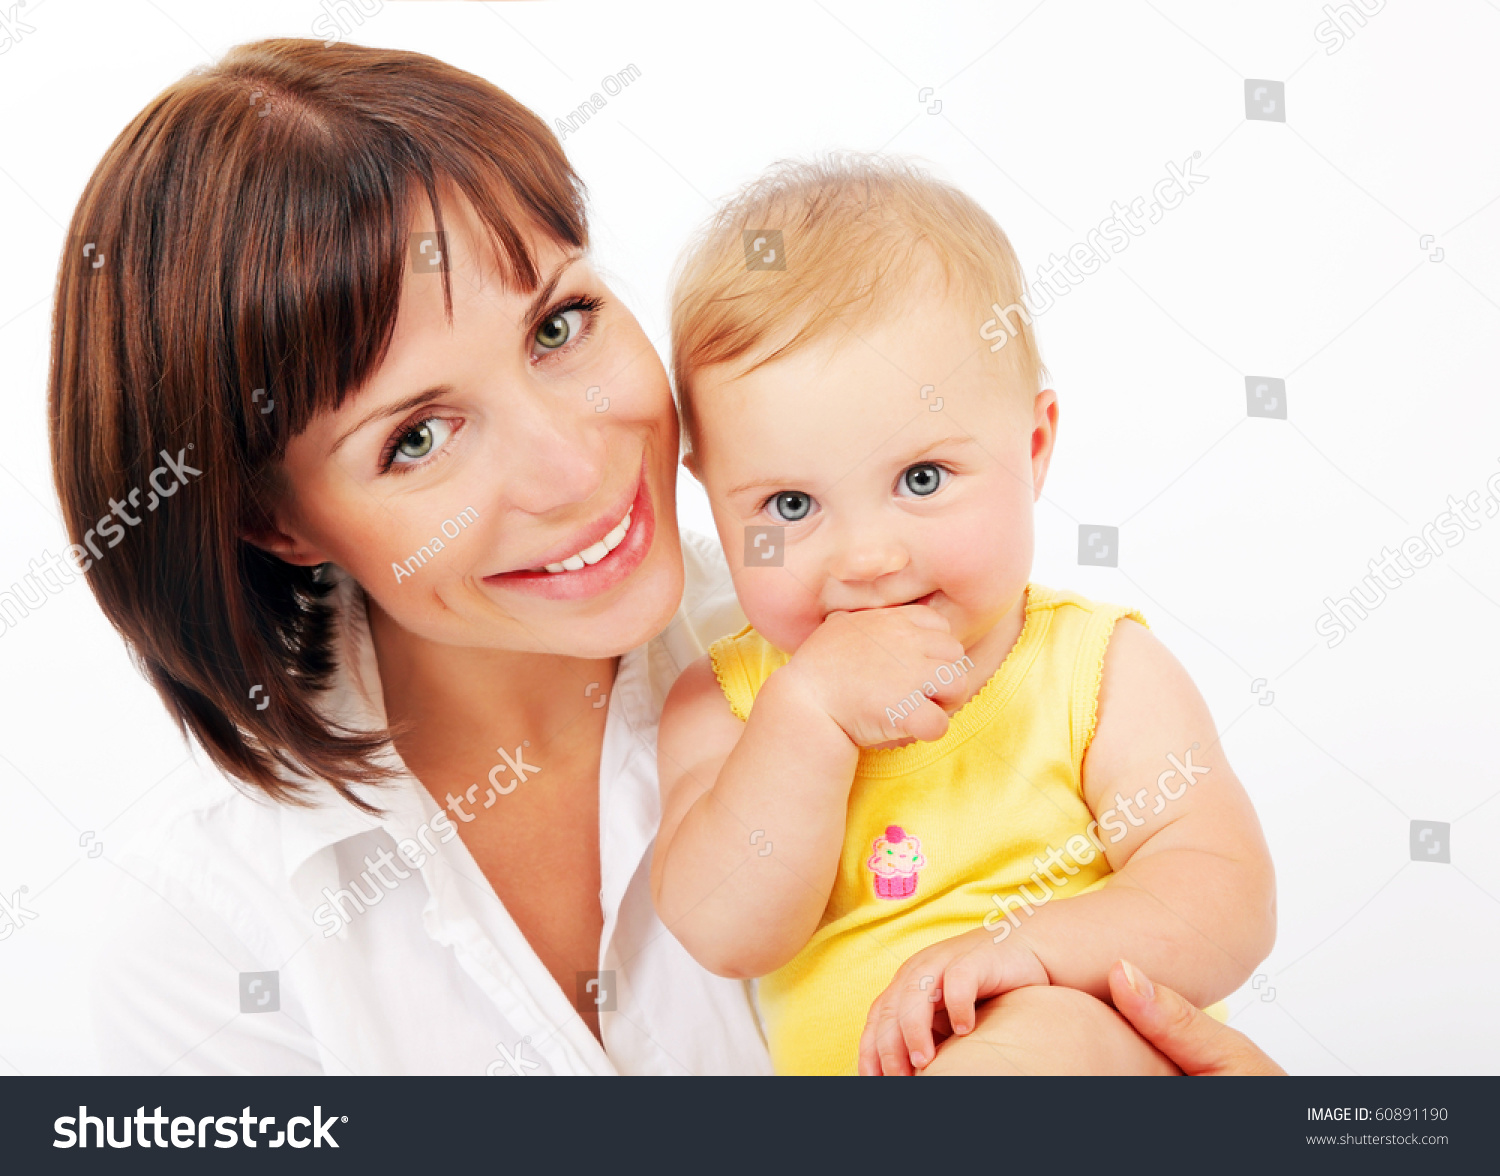 определите кто на картинке является мамой ребенка